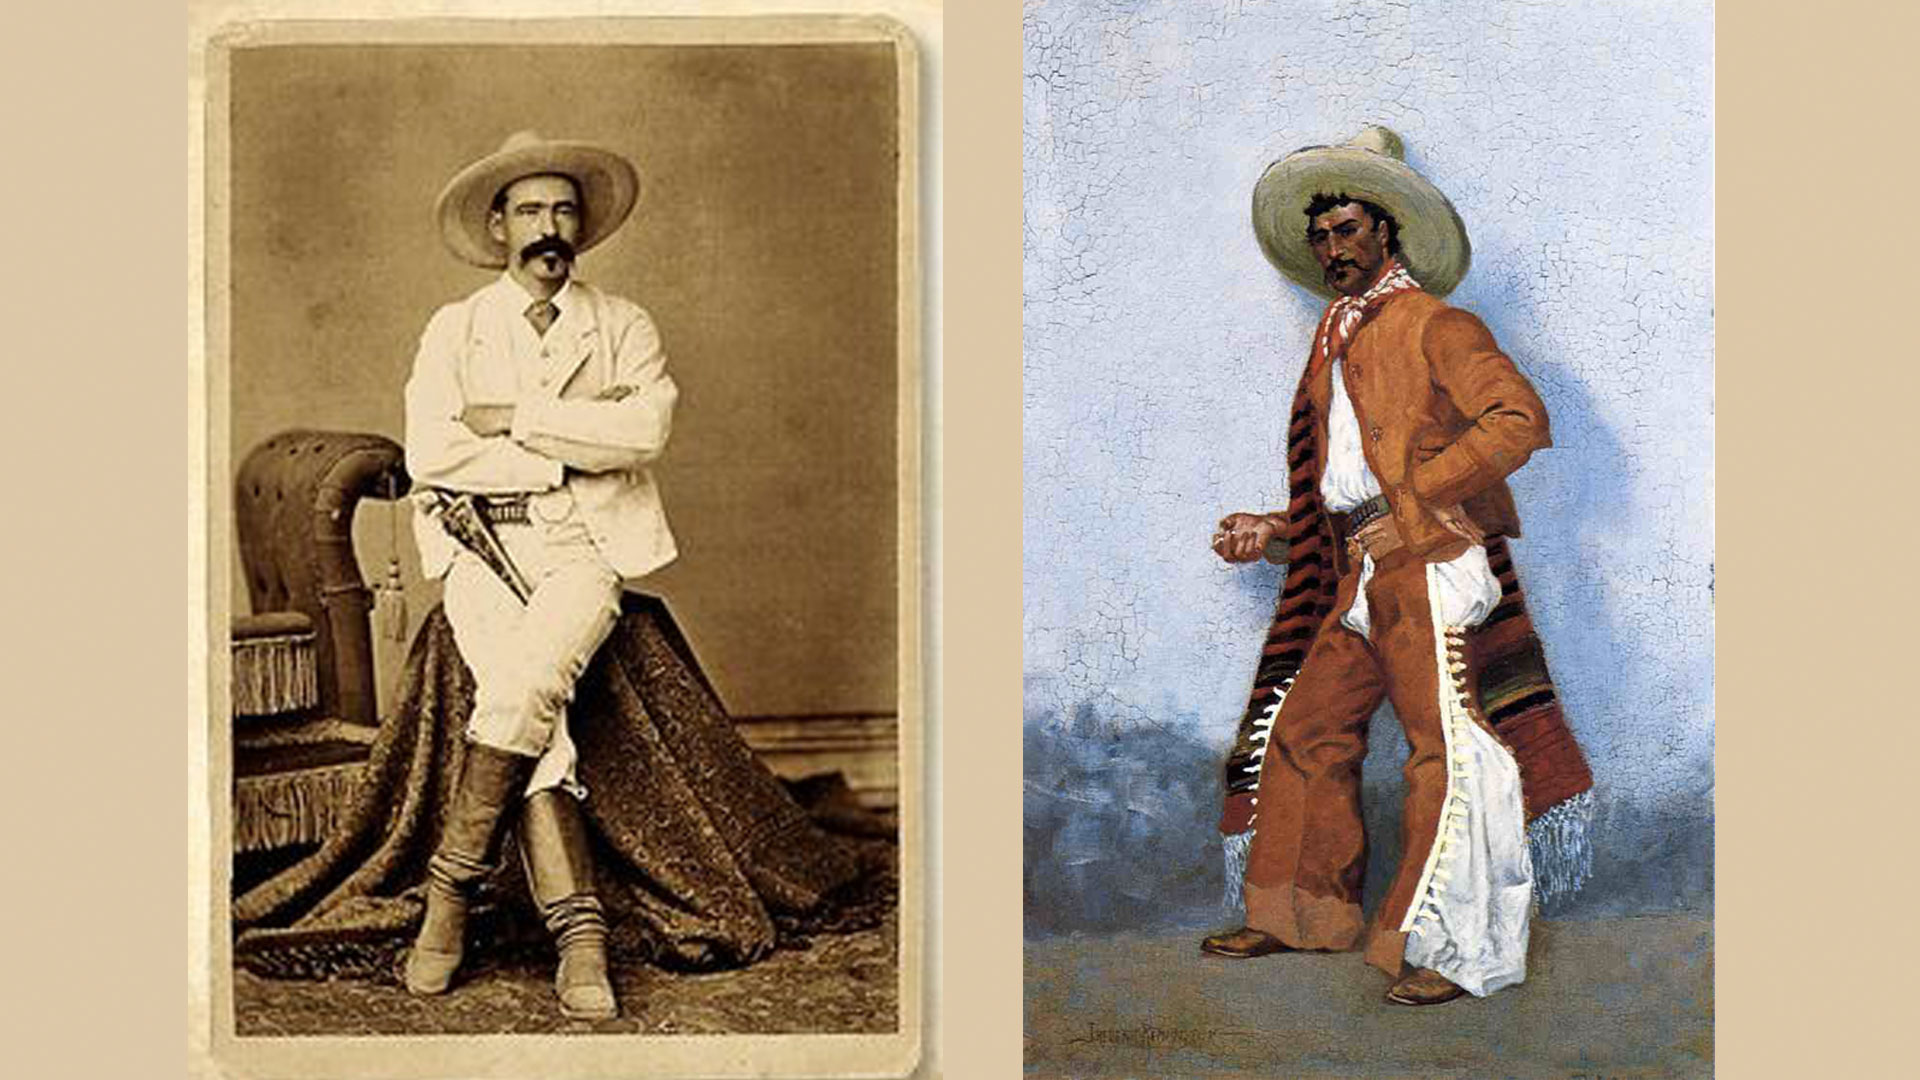 mexican cowboy dress